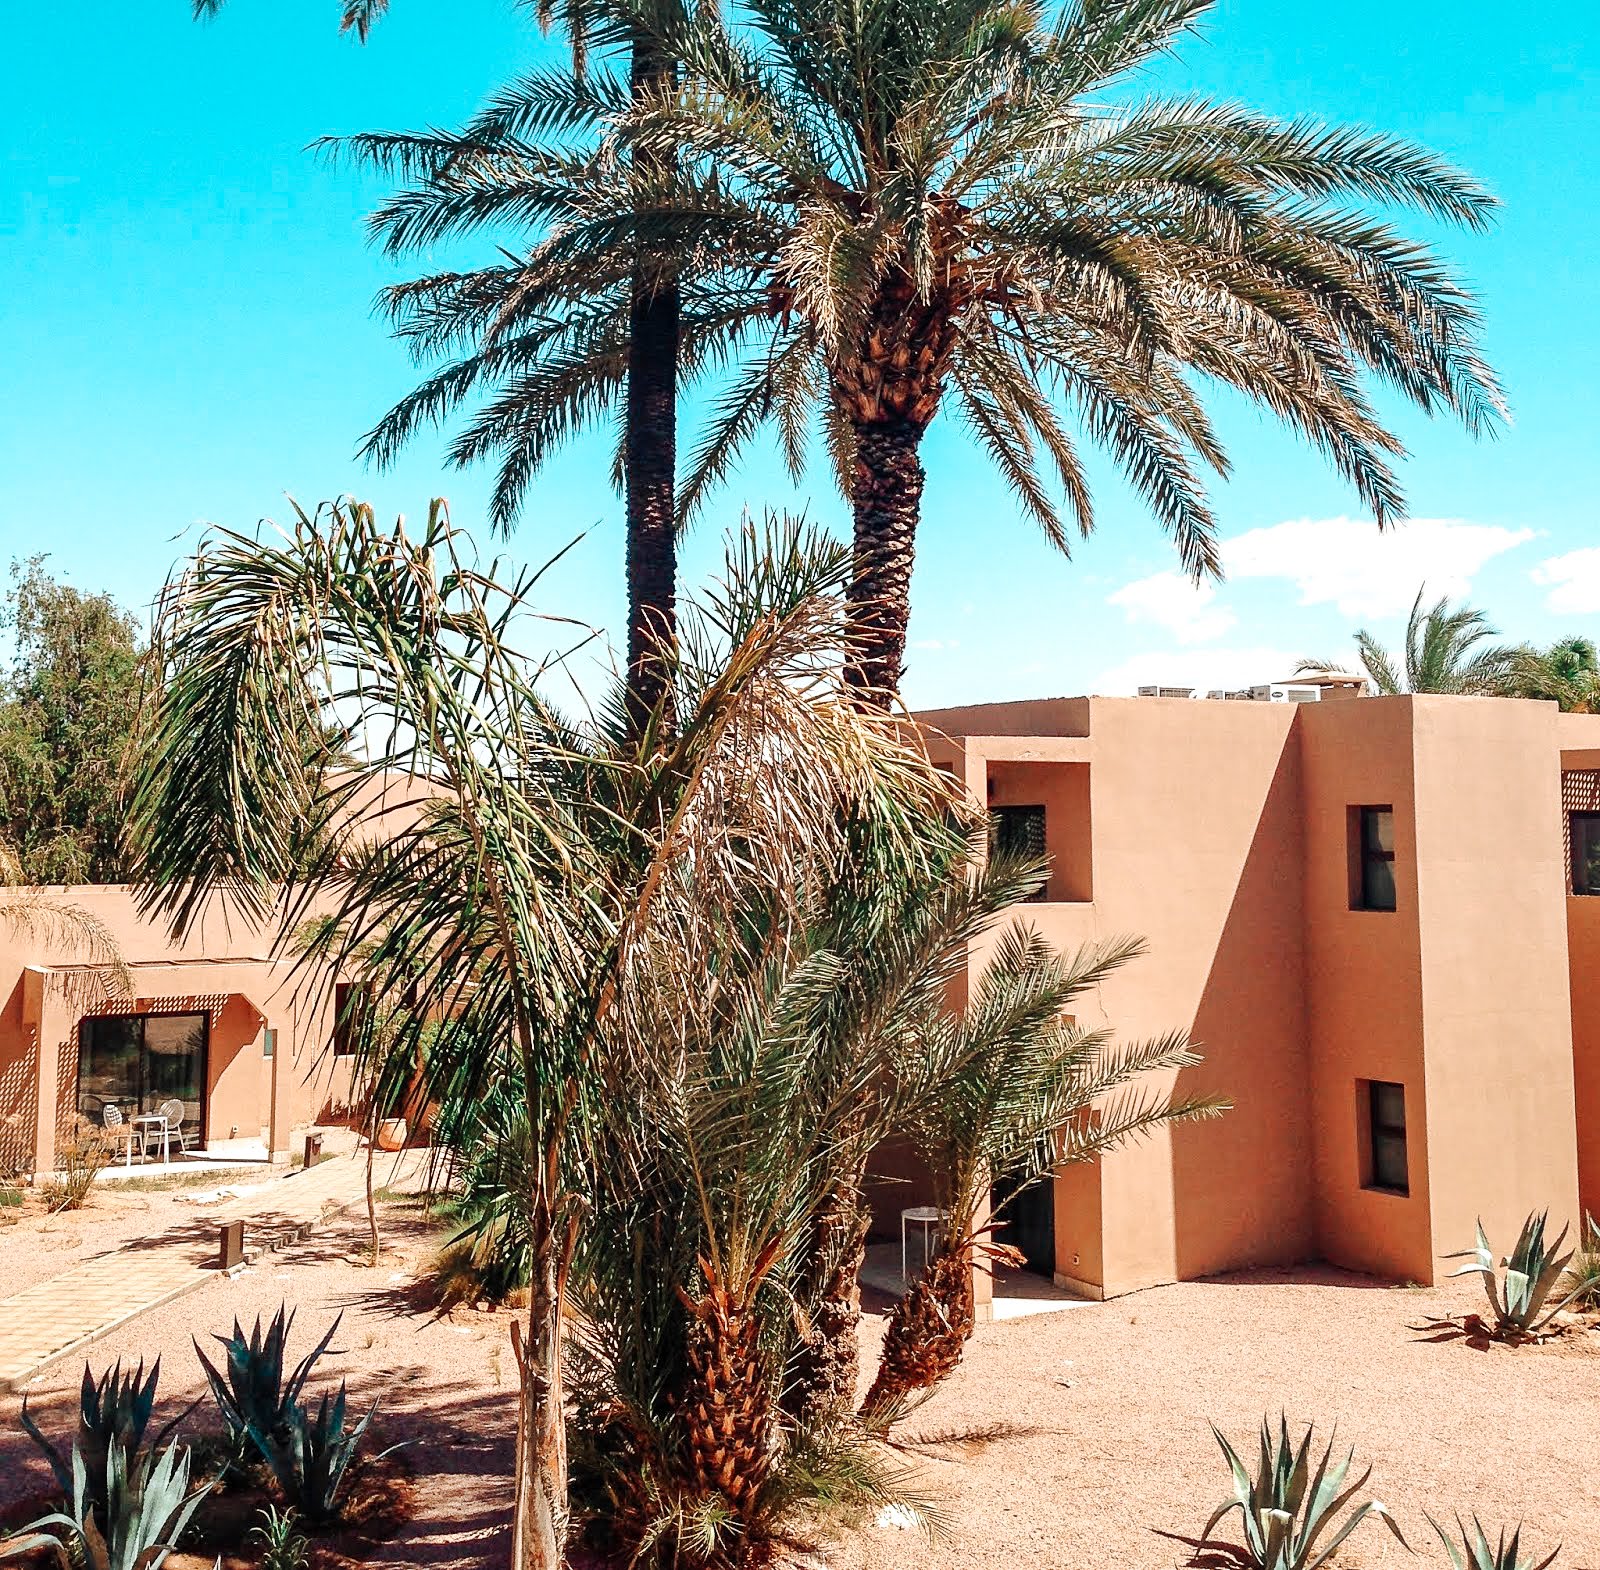 palmier et chambres de l'hôtel Pullman à Marrakech en arrière plan